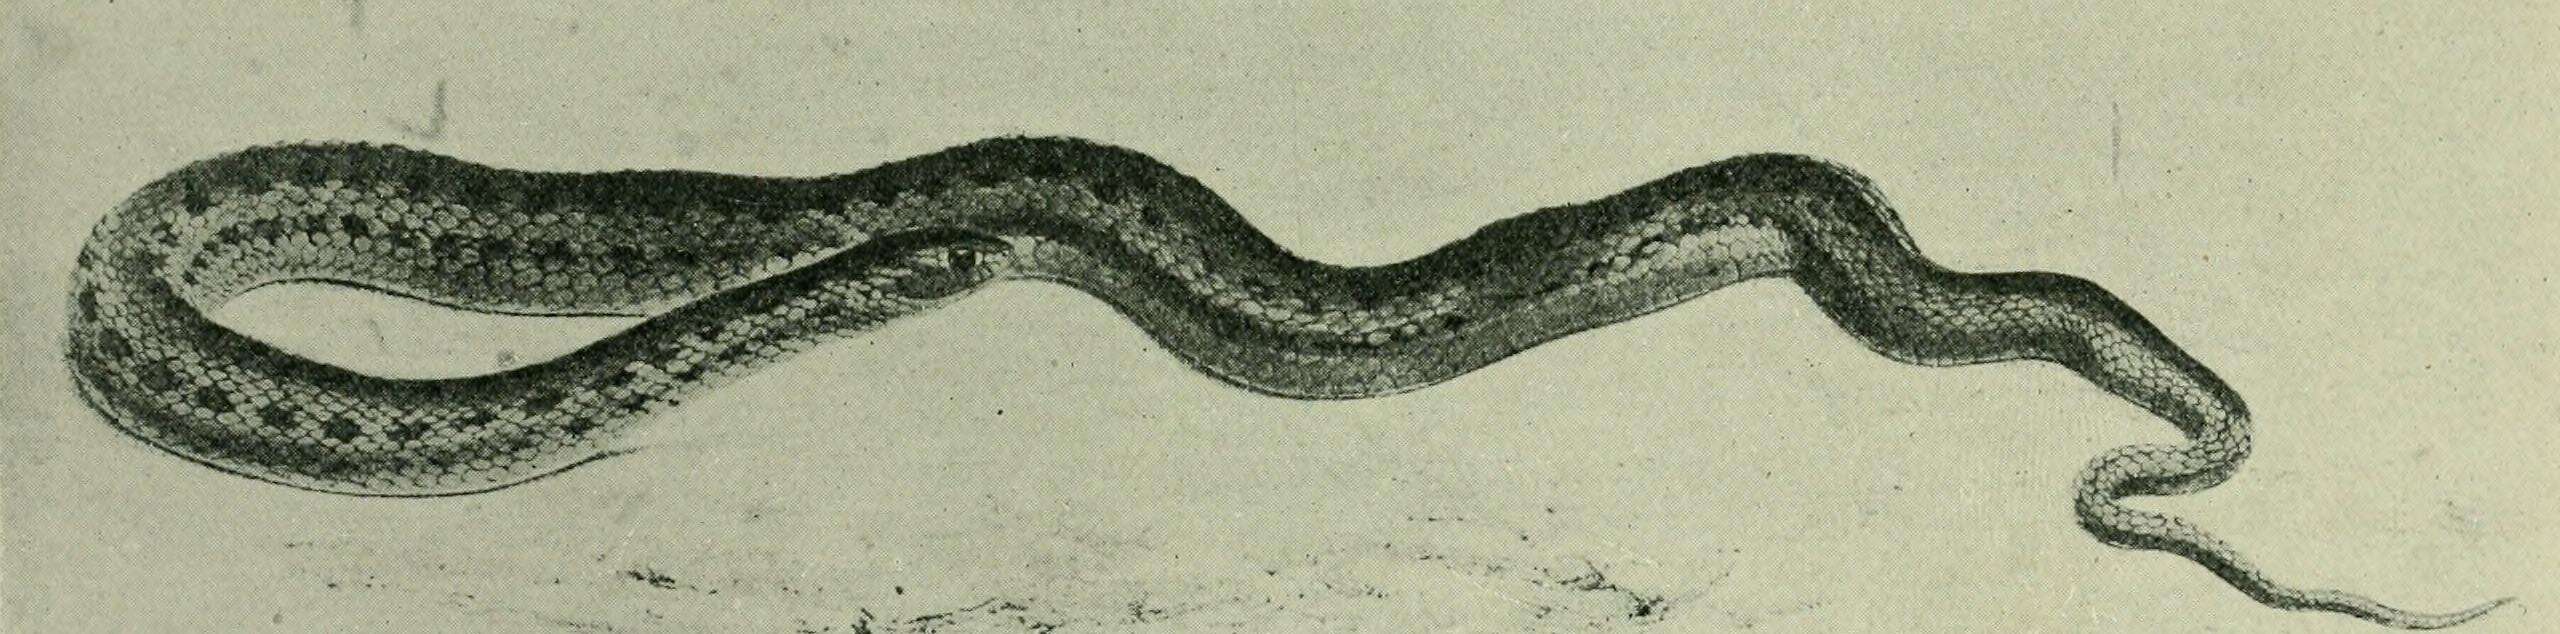 Image de Dipsina multimaculata (A. Smith 1847)